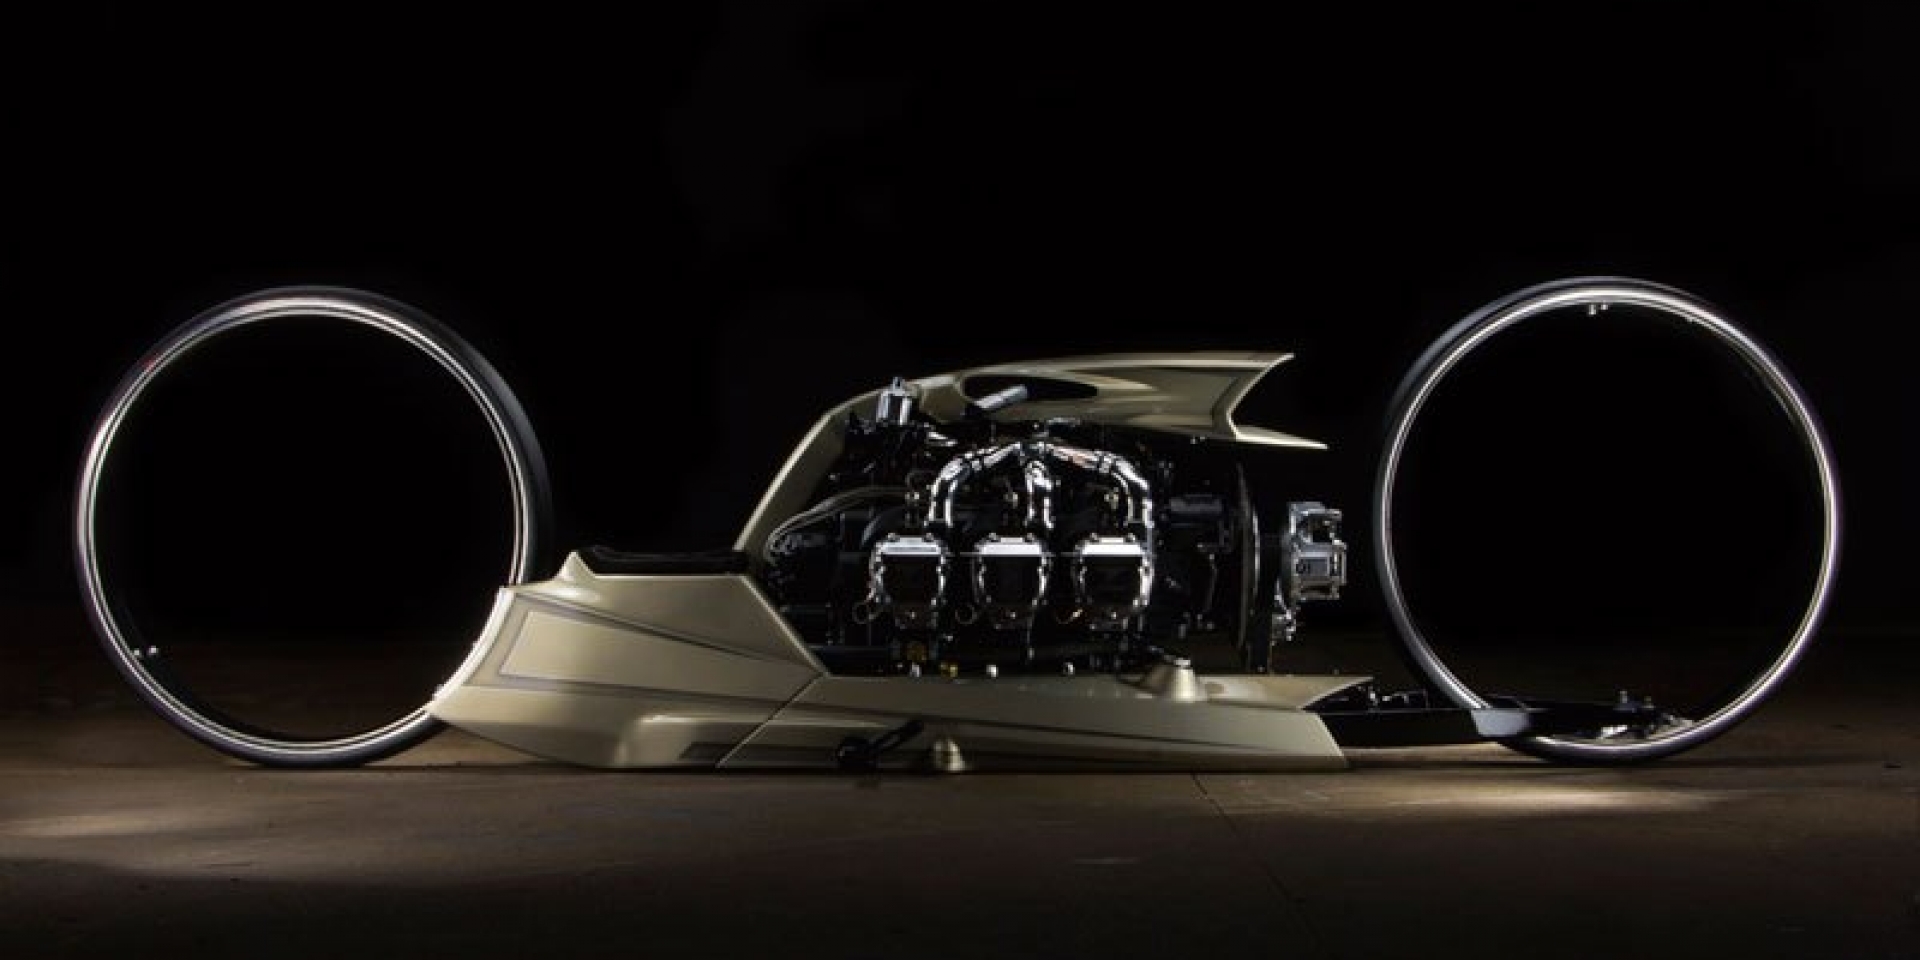 勞斯萊斯的300匹笑談間-TMC Dumont Concept概念車